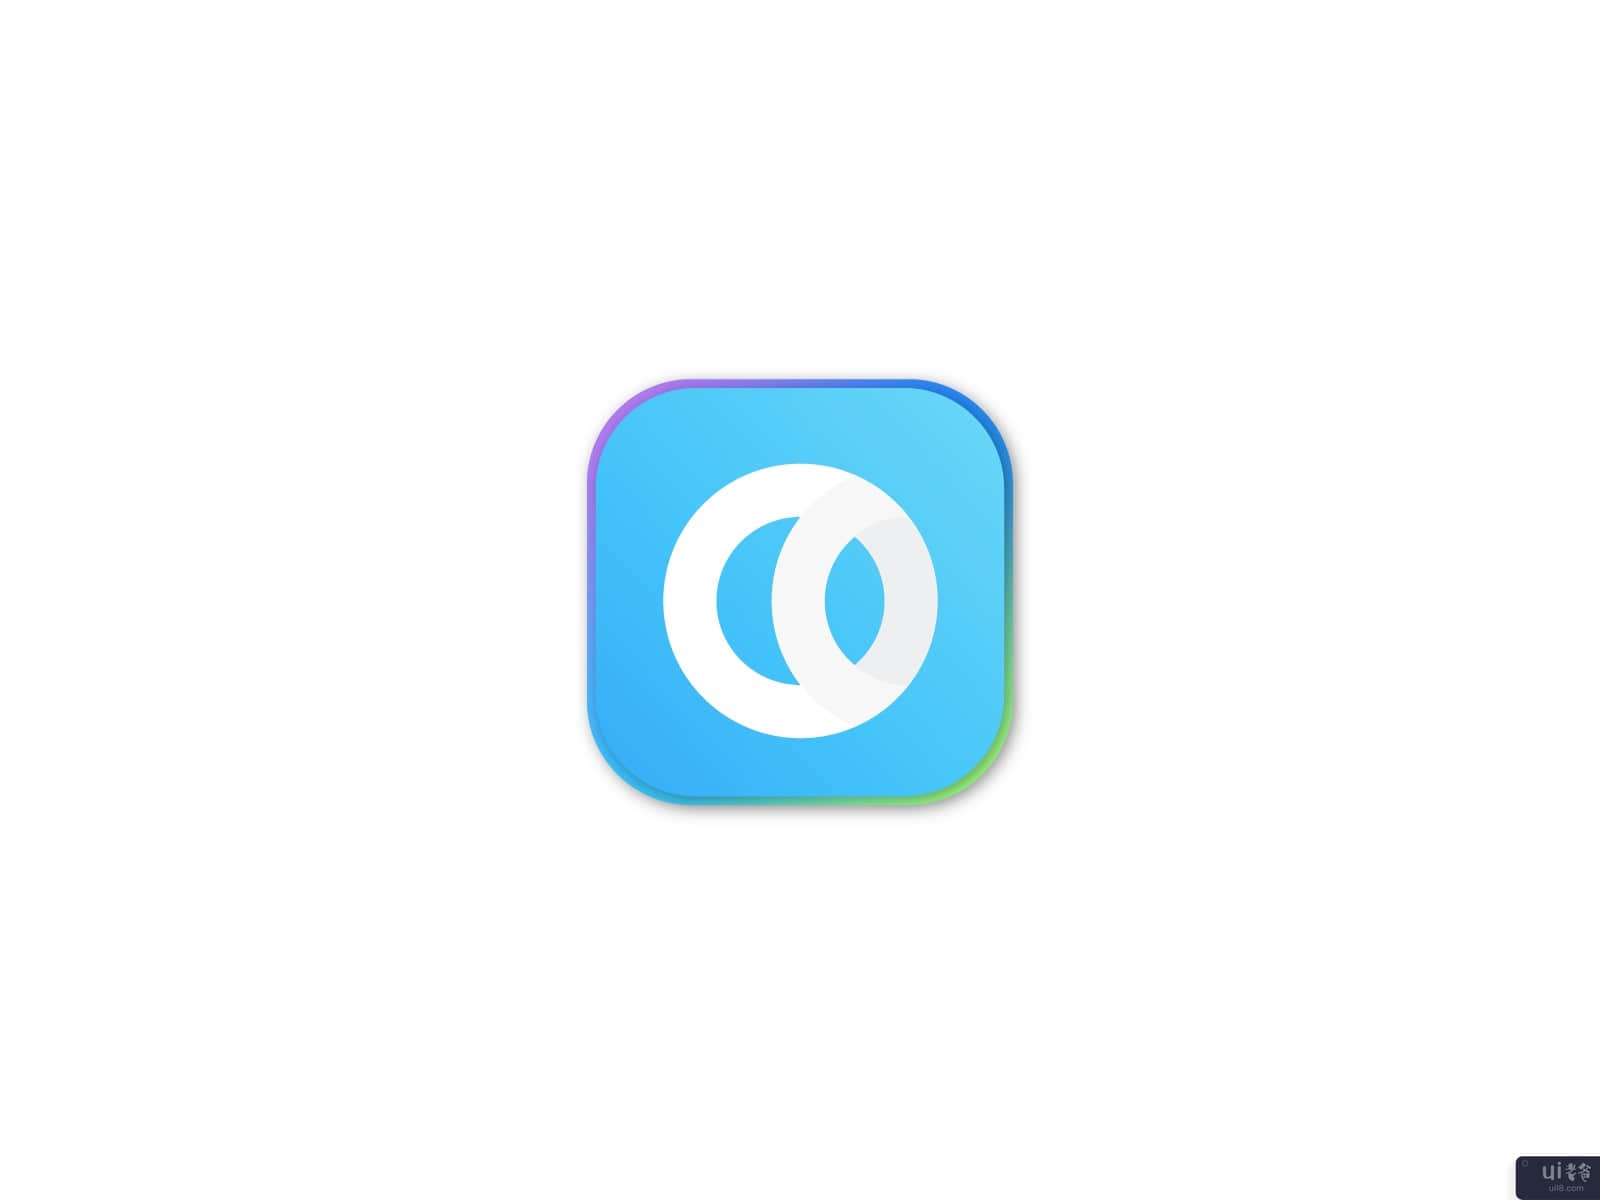 大话西游标志--大话现代标志(O Lattermark Logo - O Modern Logo)插图5